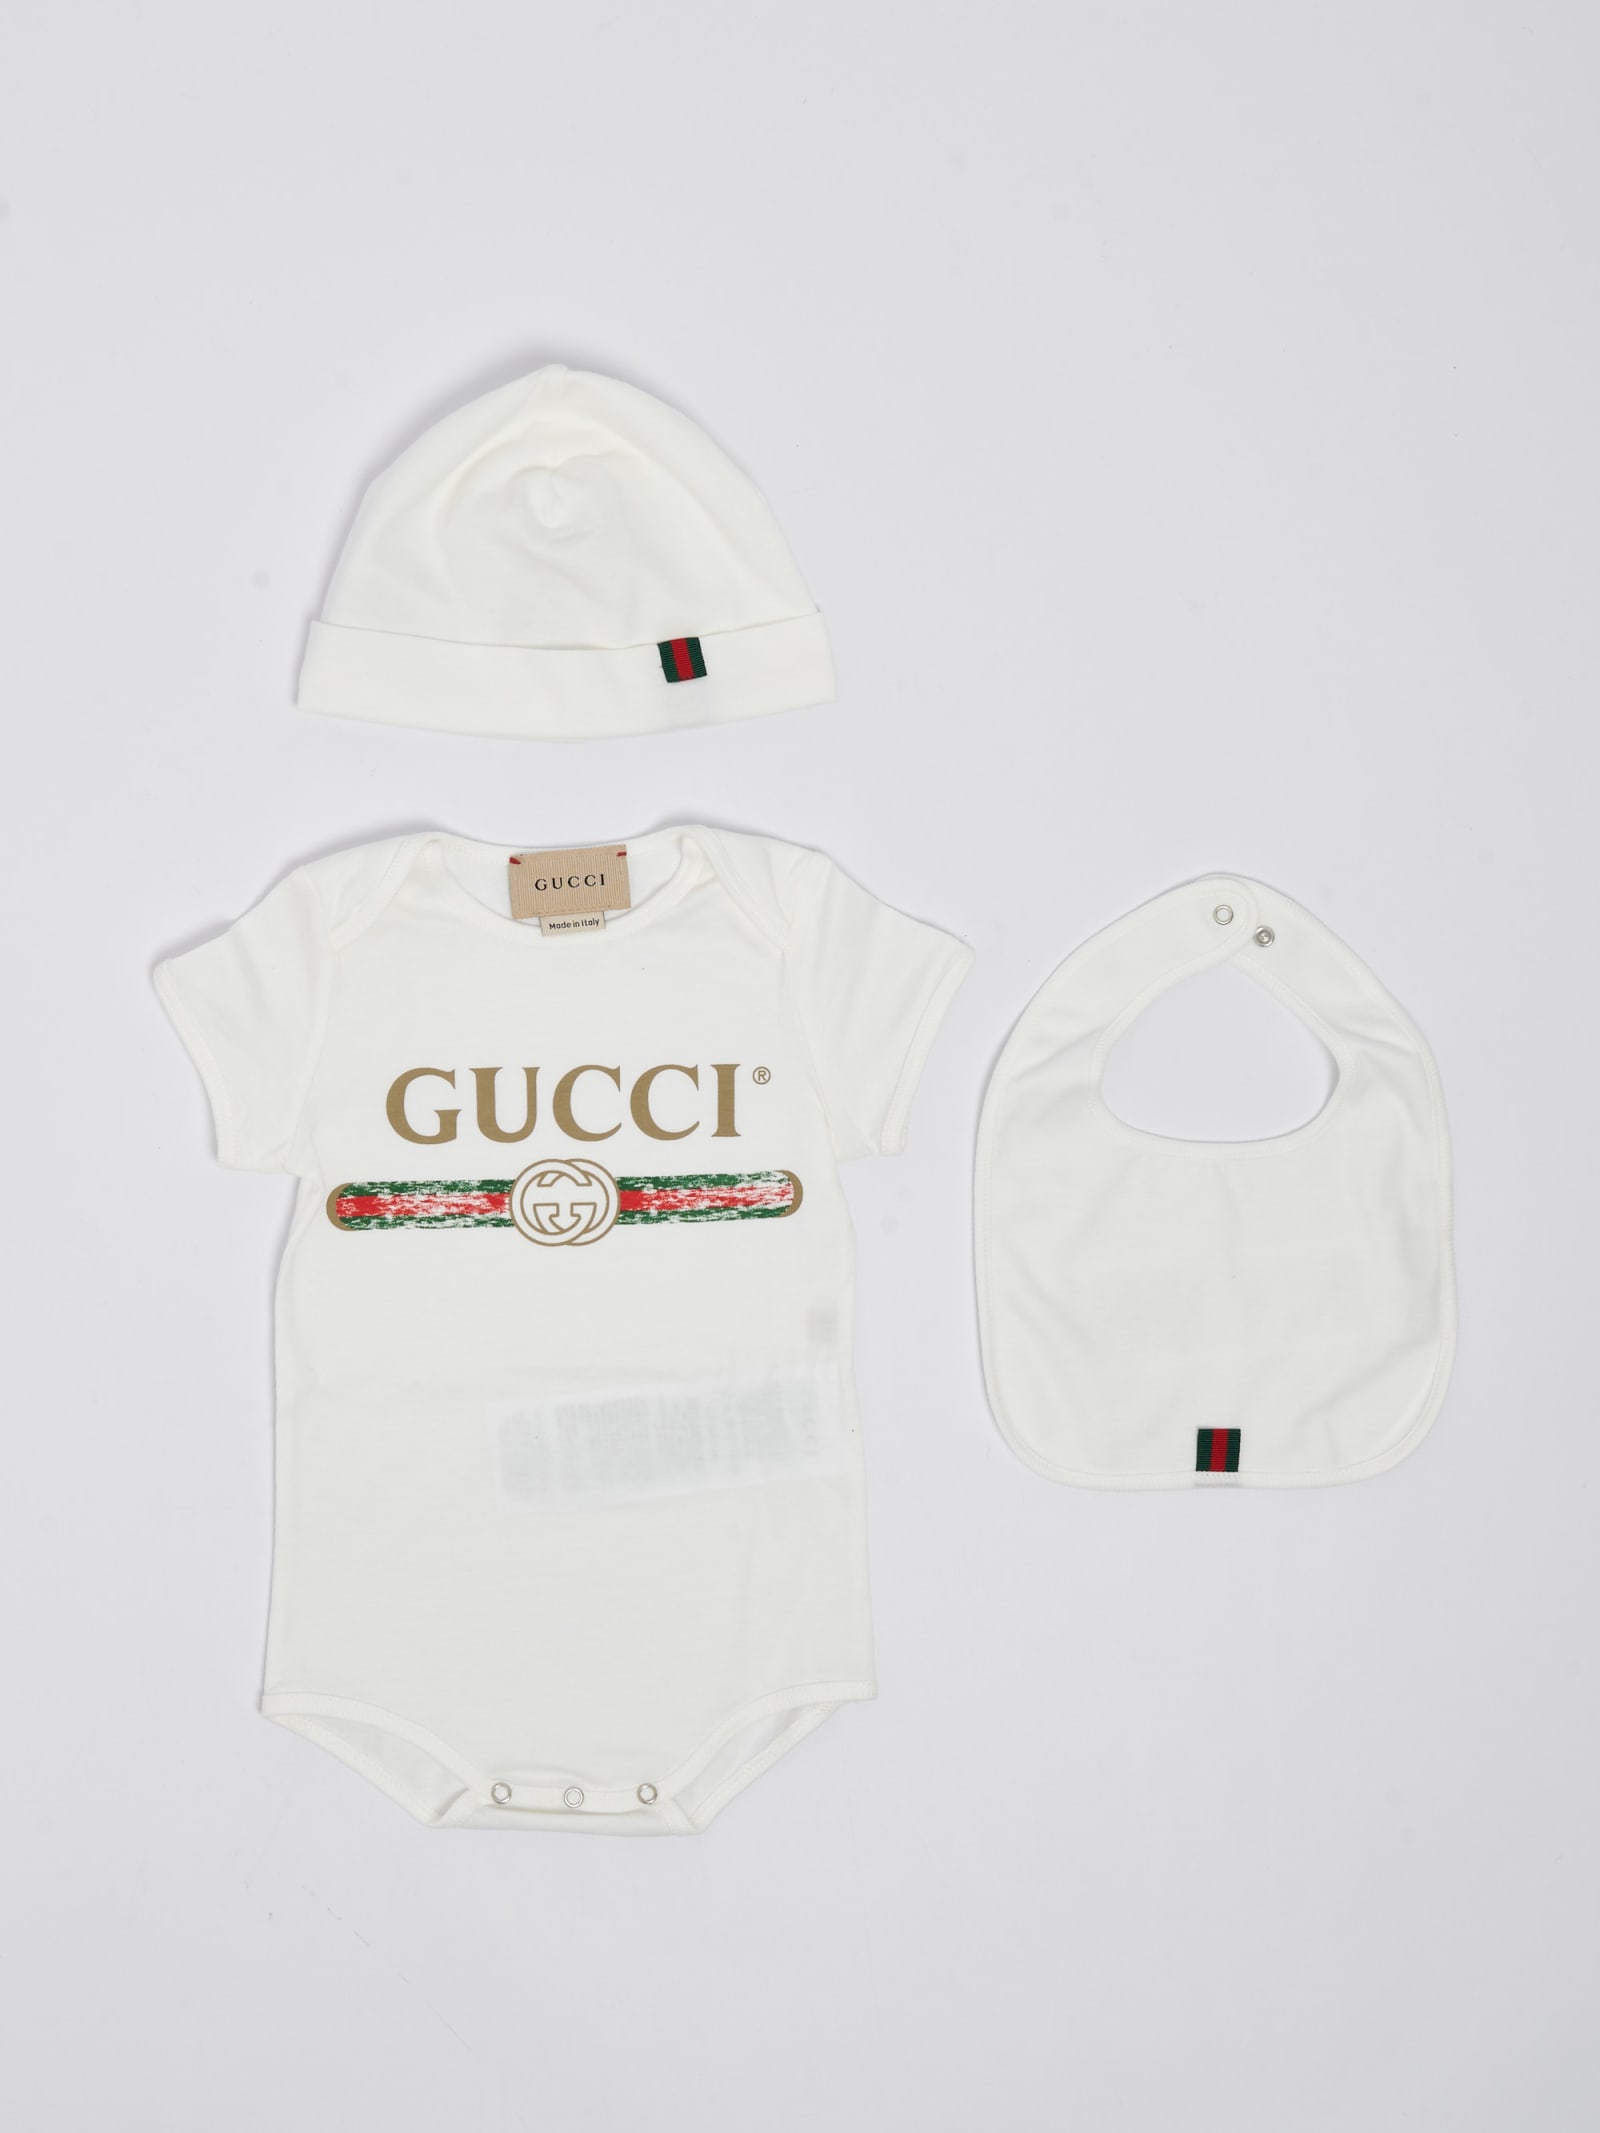 Gucci Gift Set Suit